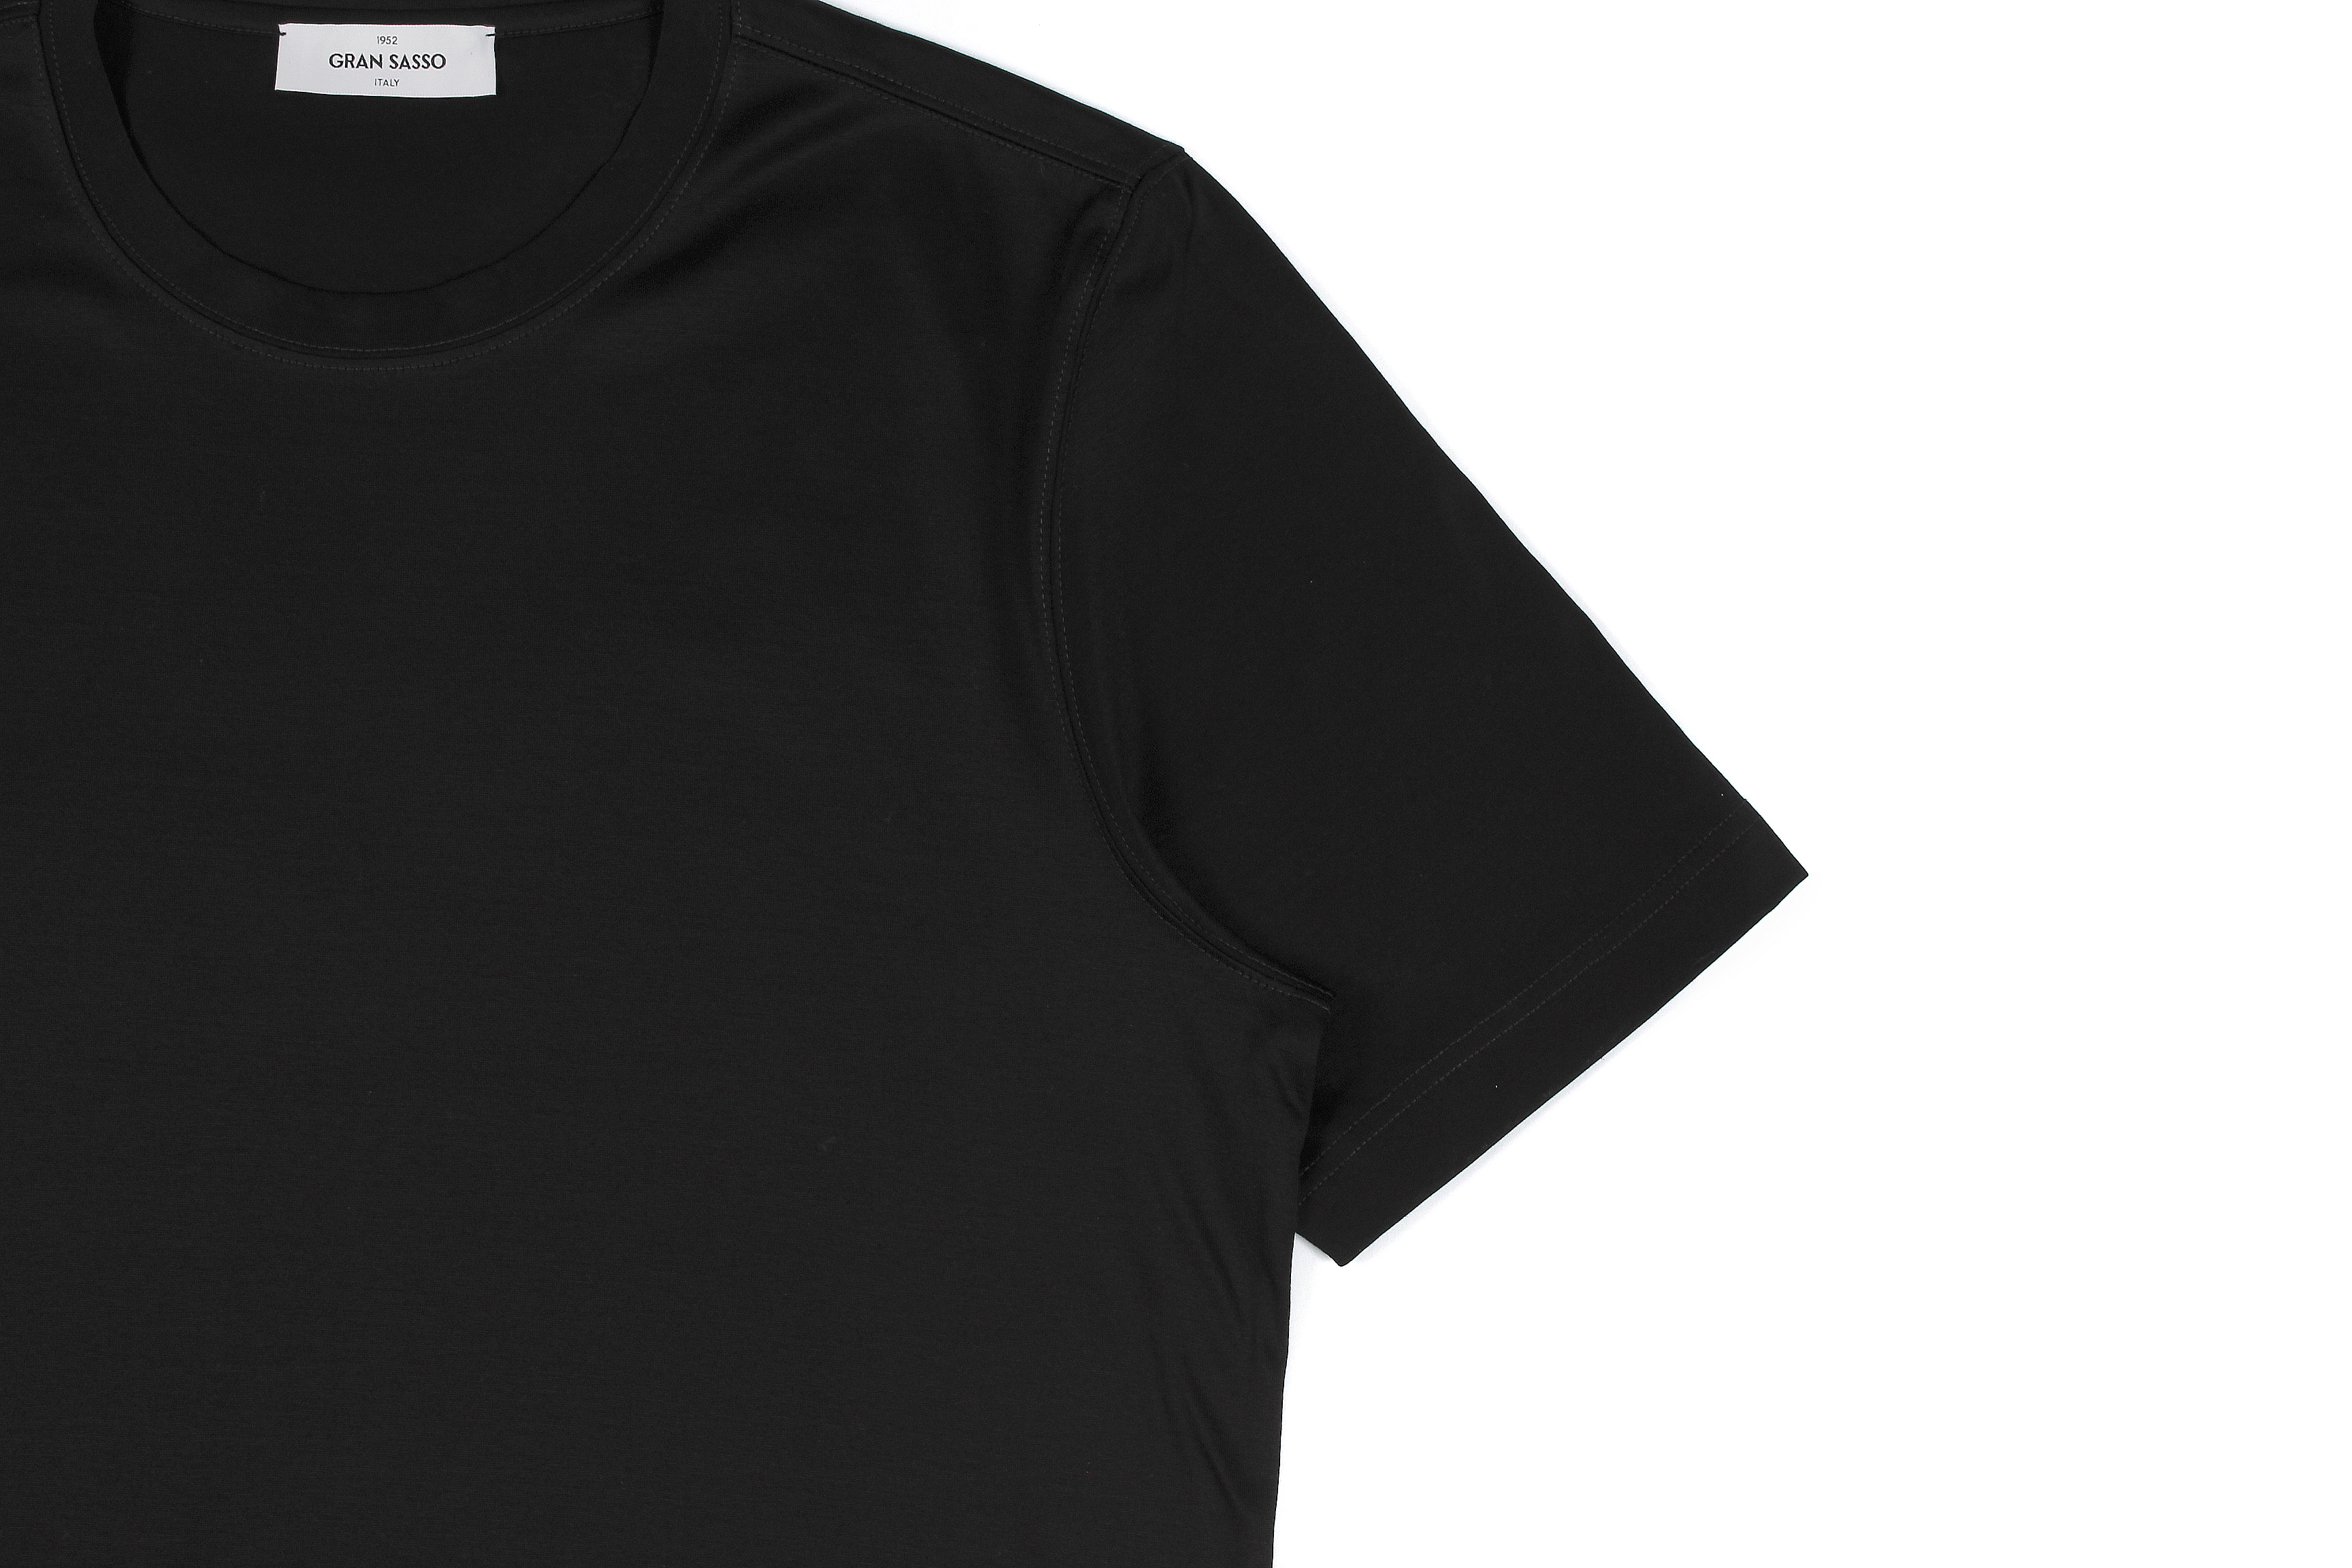 Gran Sasso (グランサッソ) Crew Neck T-shirt (クルーネック Tシャツ) Mercerised Cotton マーセライズドコットン Tシャツ BLACK (ブラック・099) made in italy (イタリア製) 2022春夏新作 【入荷しました】【フリー分発売開始】愛知 名古屋 Alto e Diritto altoediritto アルトエデリット